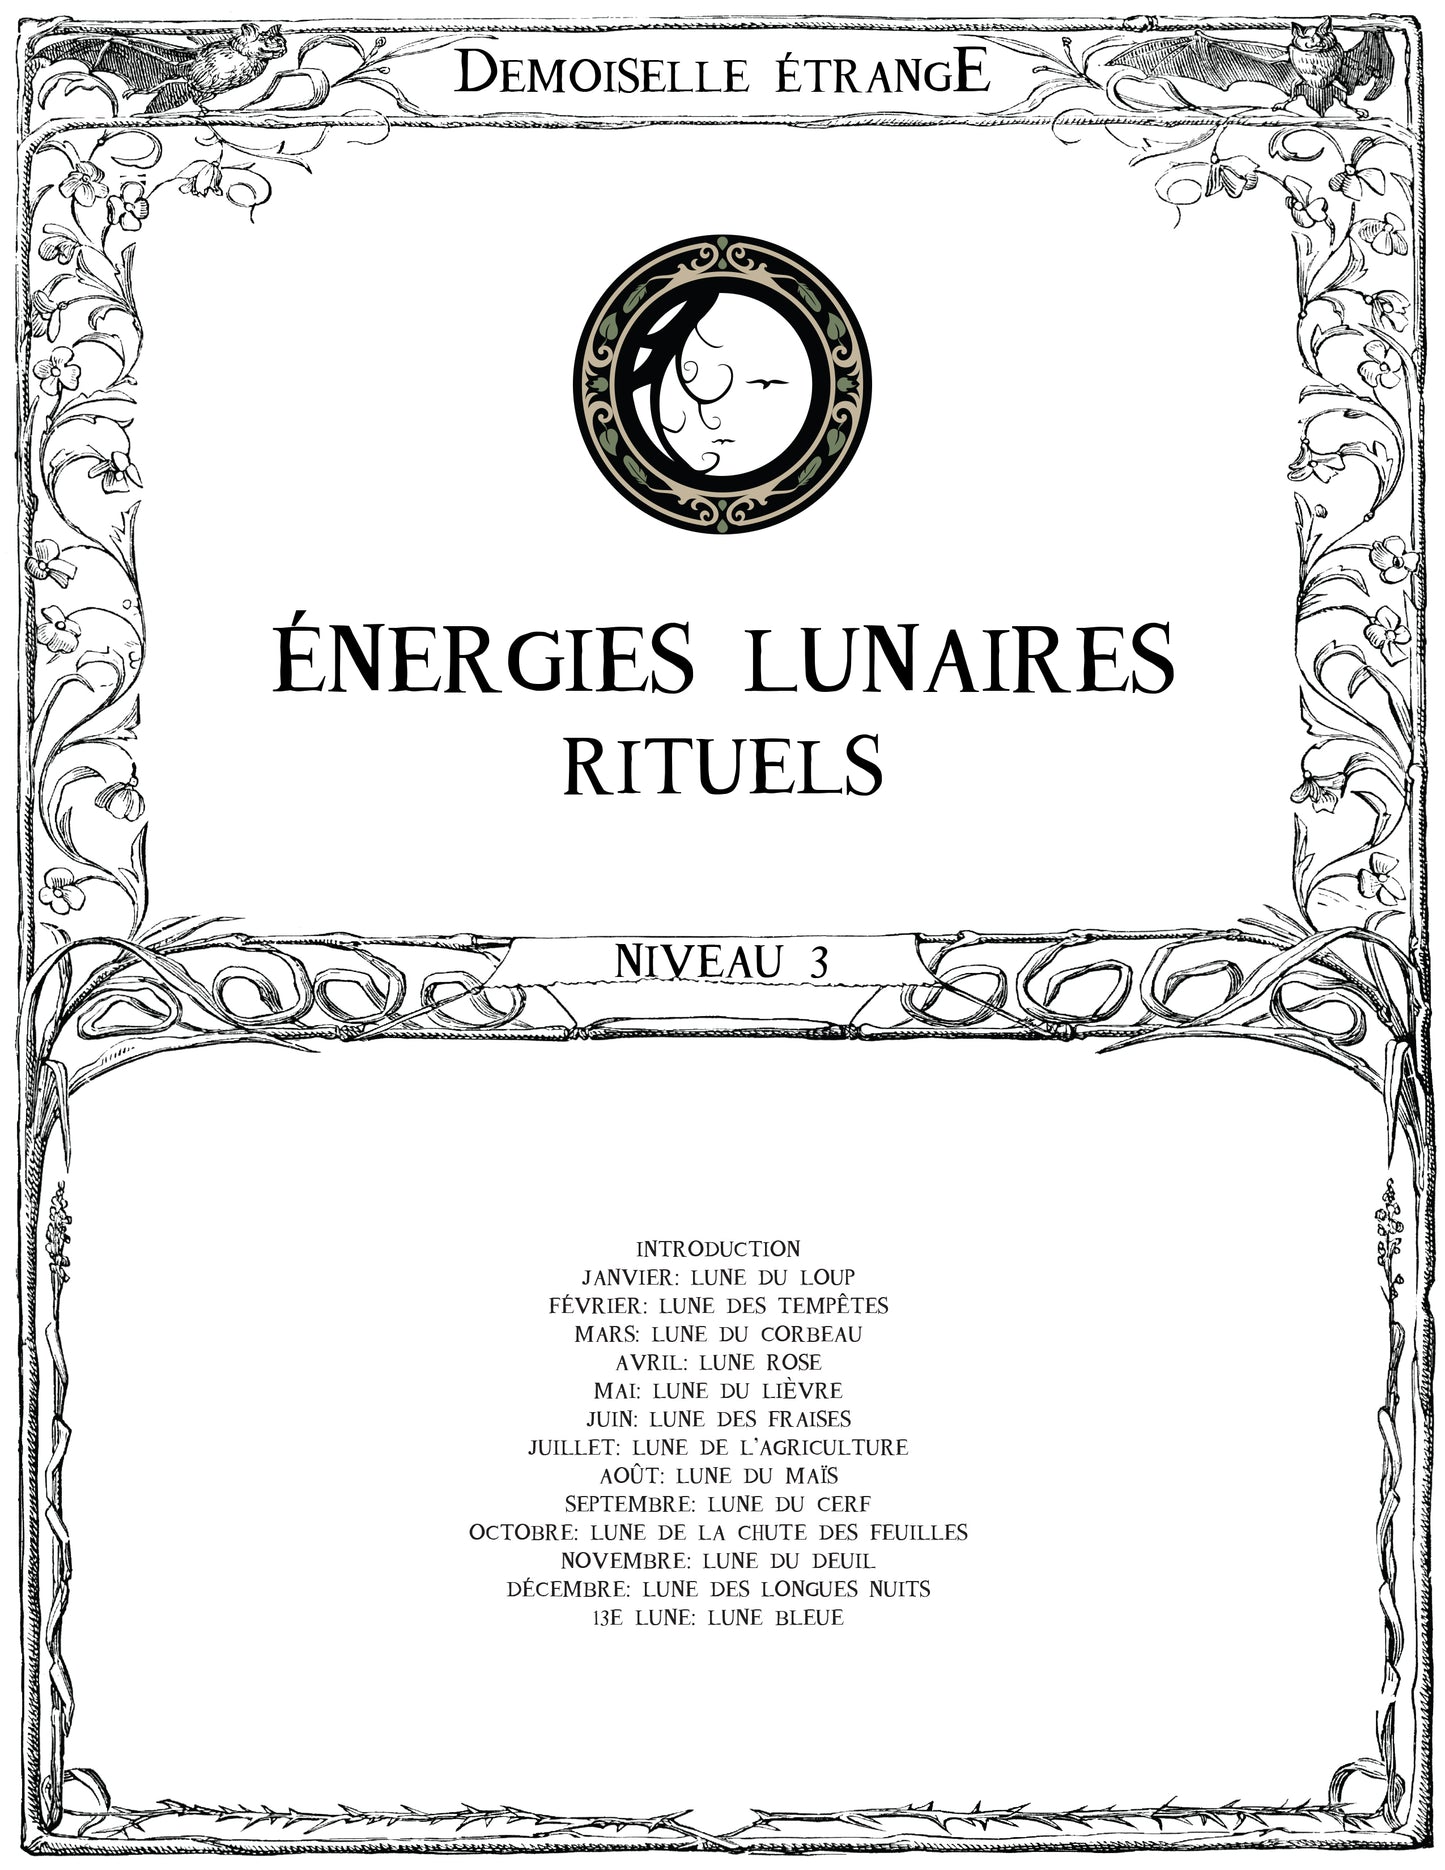 ÉNERGIES LUNAIRES (N3) Rituels